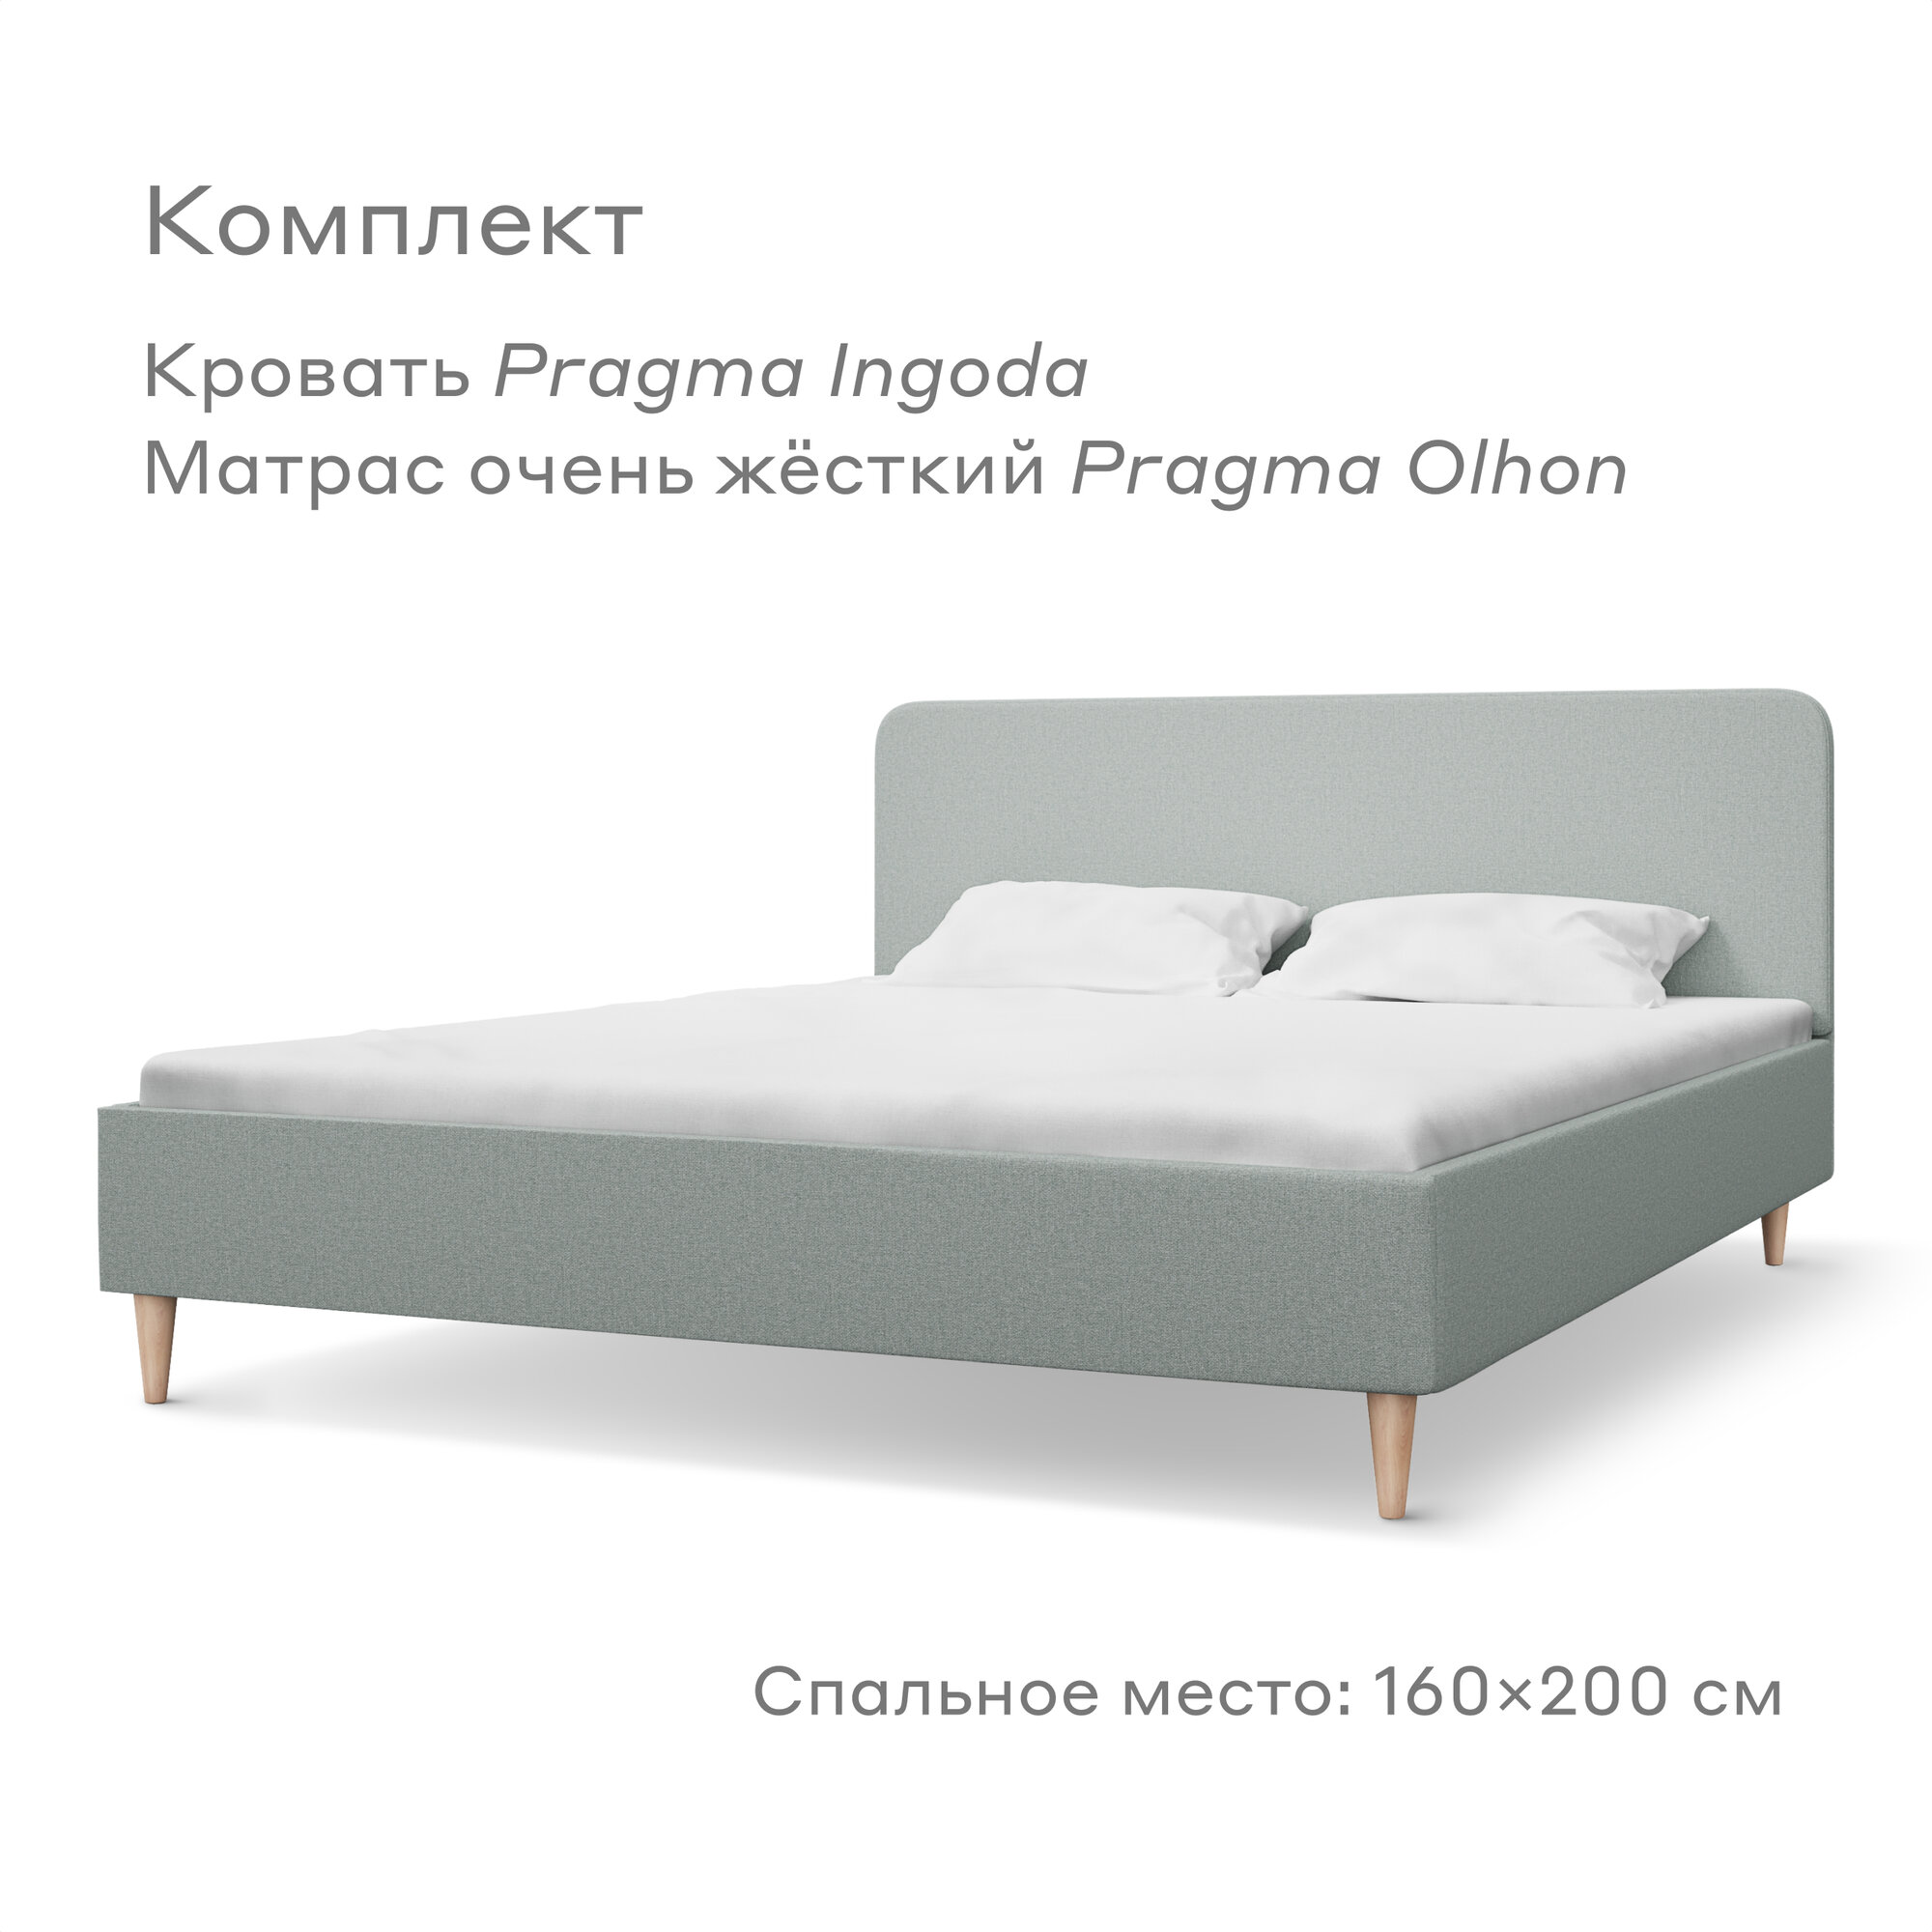 Кровать Pragma Ingoda/Olhon, размер (ДхШ): 206х165 см, спальное место (ДхШ): 200х160 см, обивка: текстиль, с матрасом, цвет: светло-зеленый